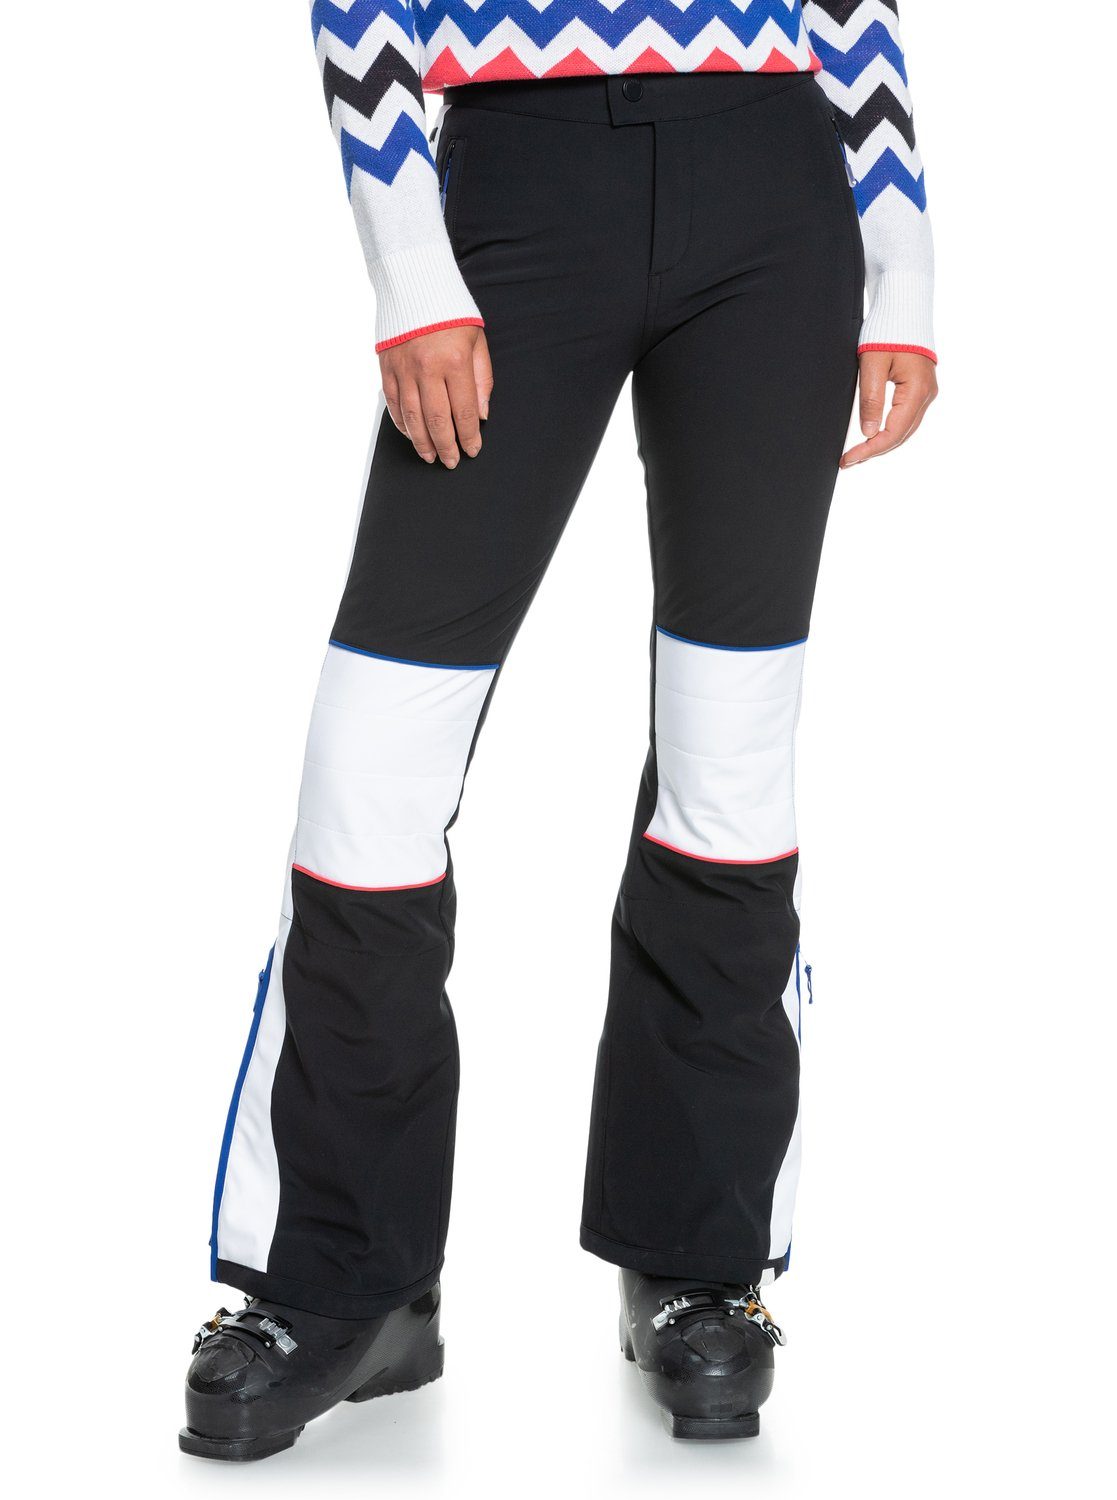 Roxy Snowboardhose Ski Chic, Fit, schmalste Reihe der die Passform: Skinny